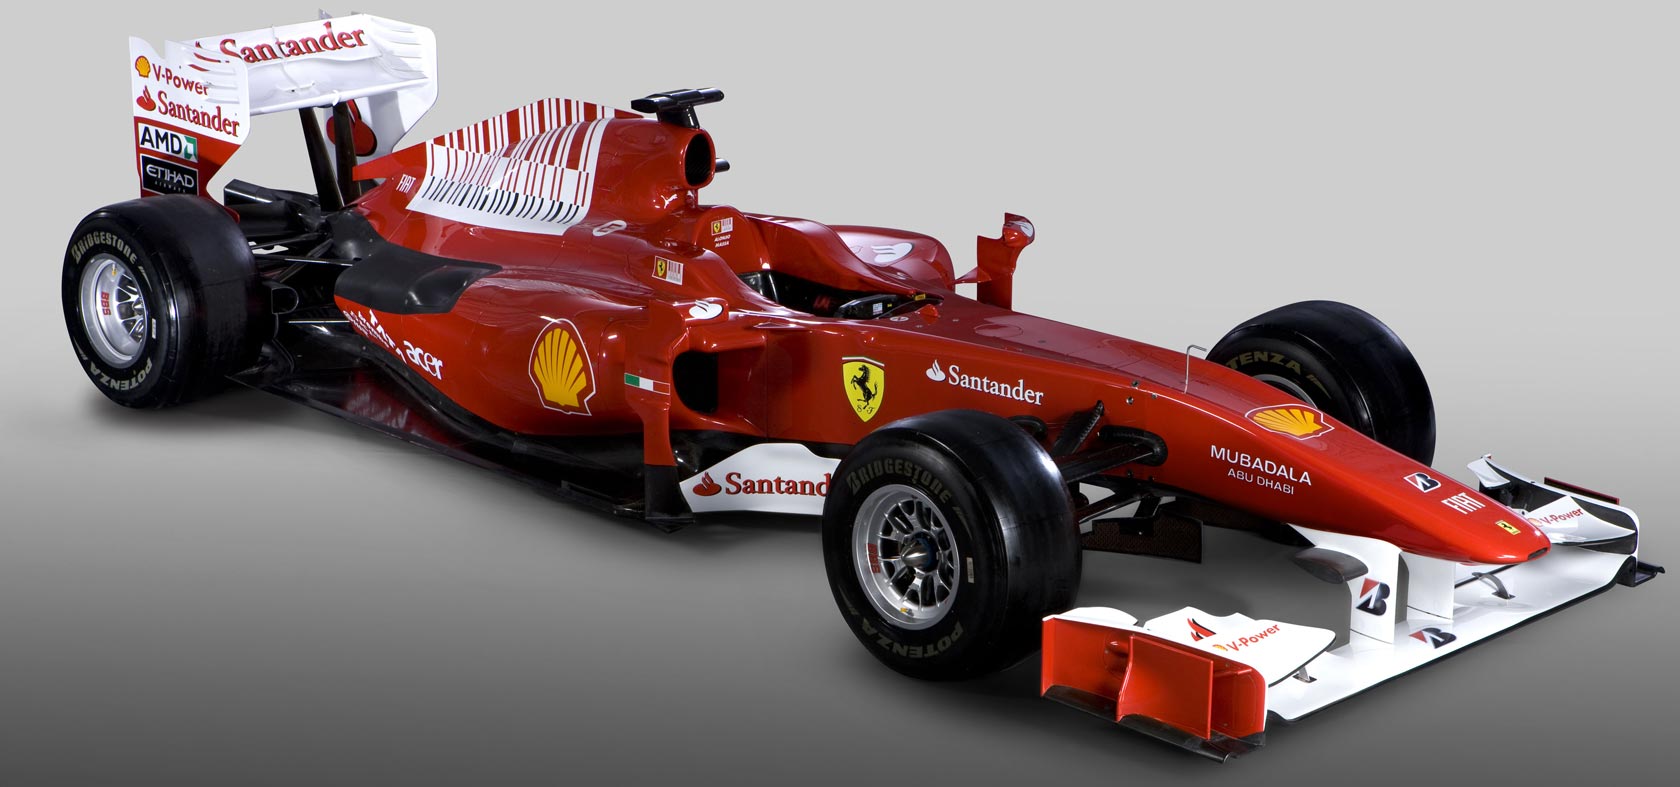 Este es el monoplaza Ferrari F10 â€“ F1 2010. ferrari-f1-2010-4 ...